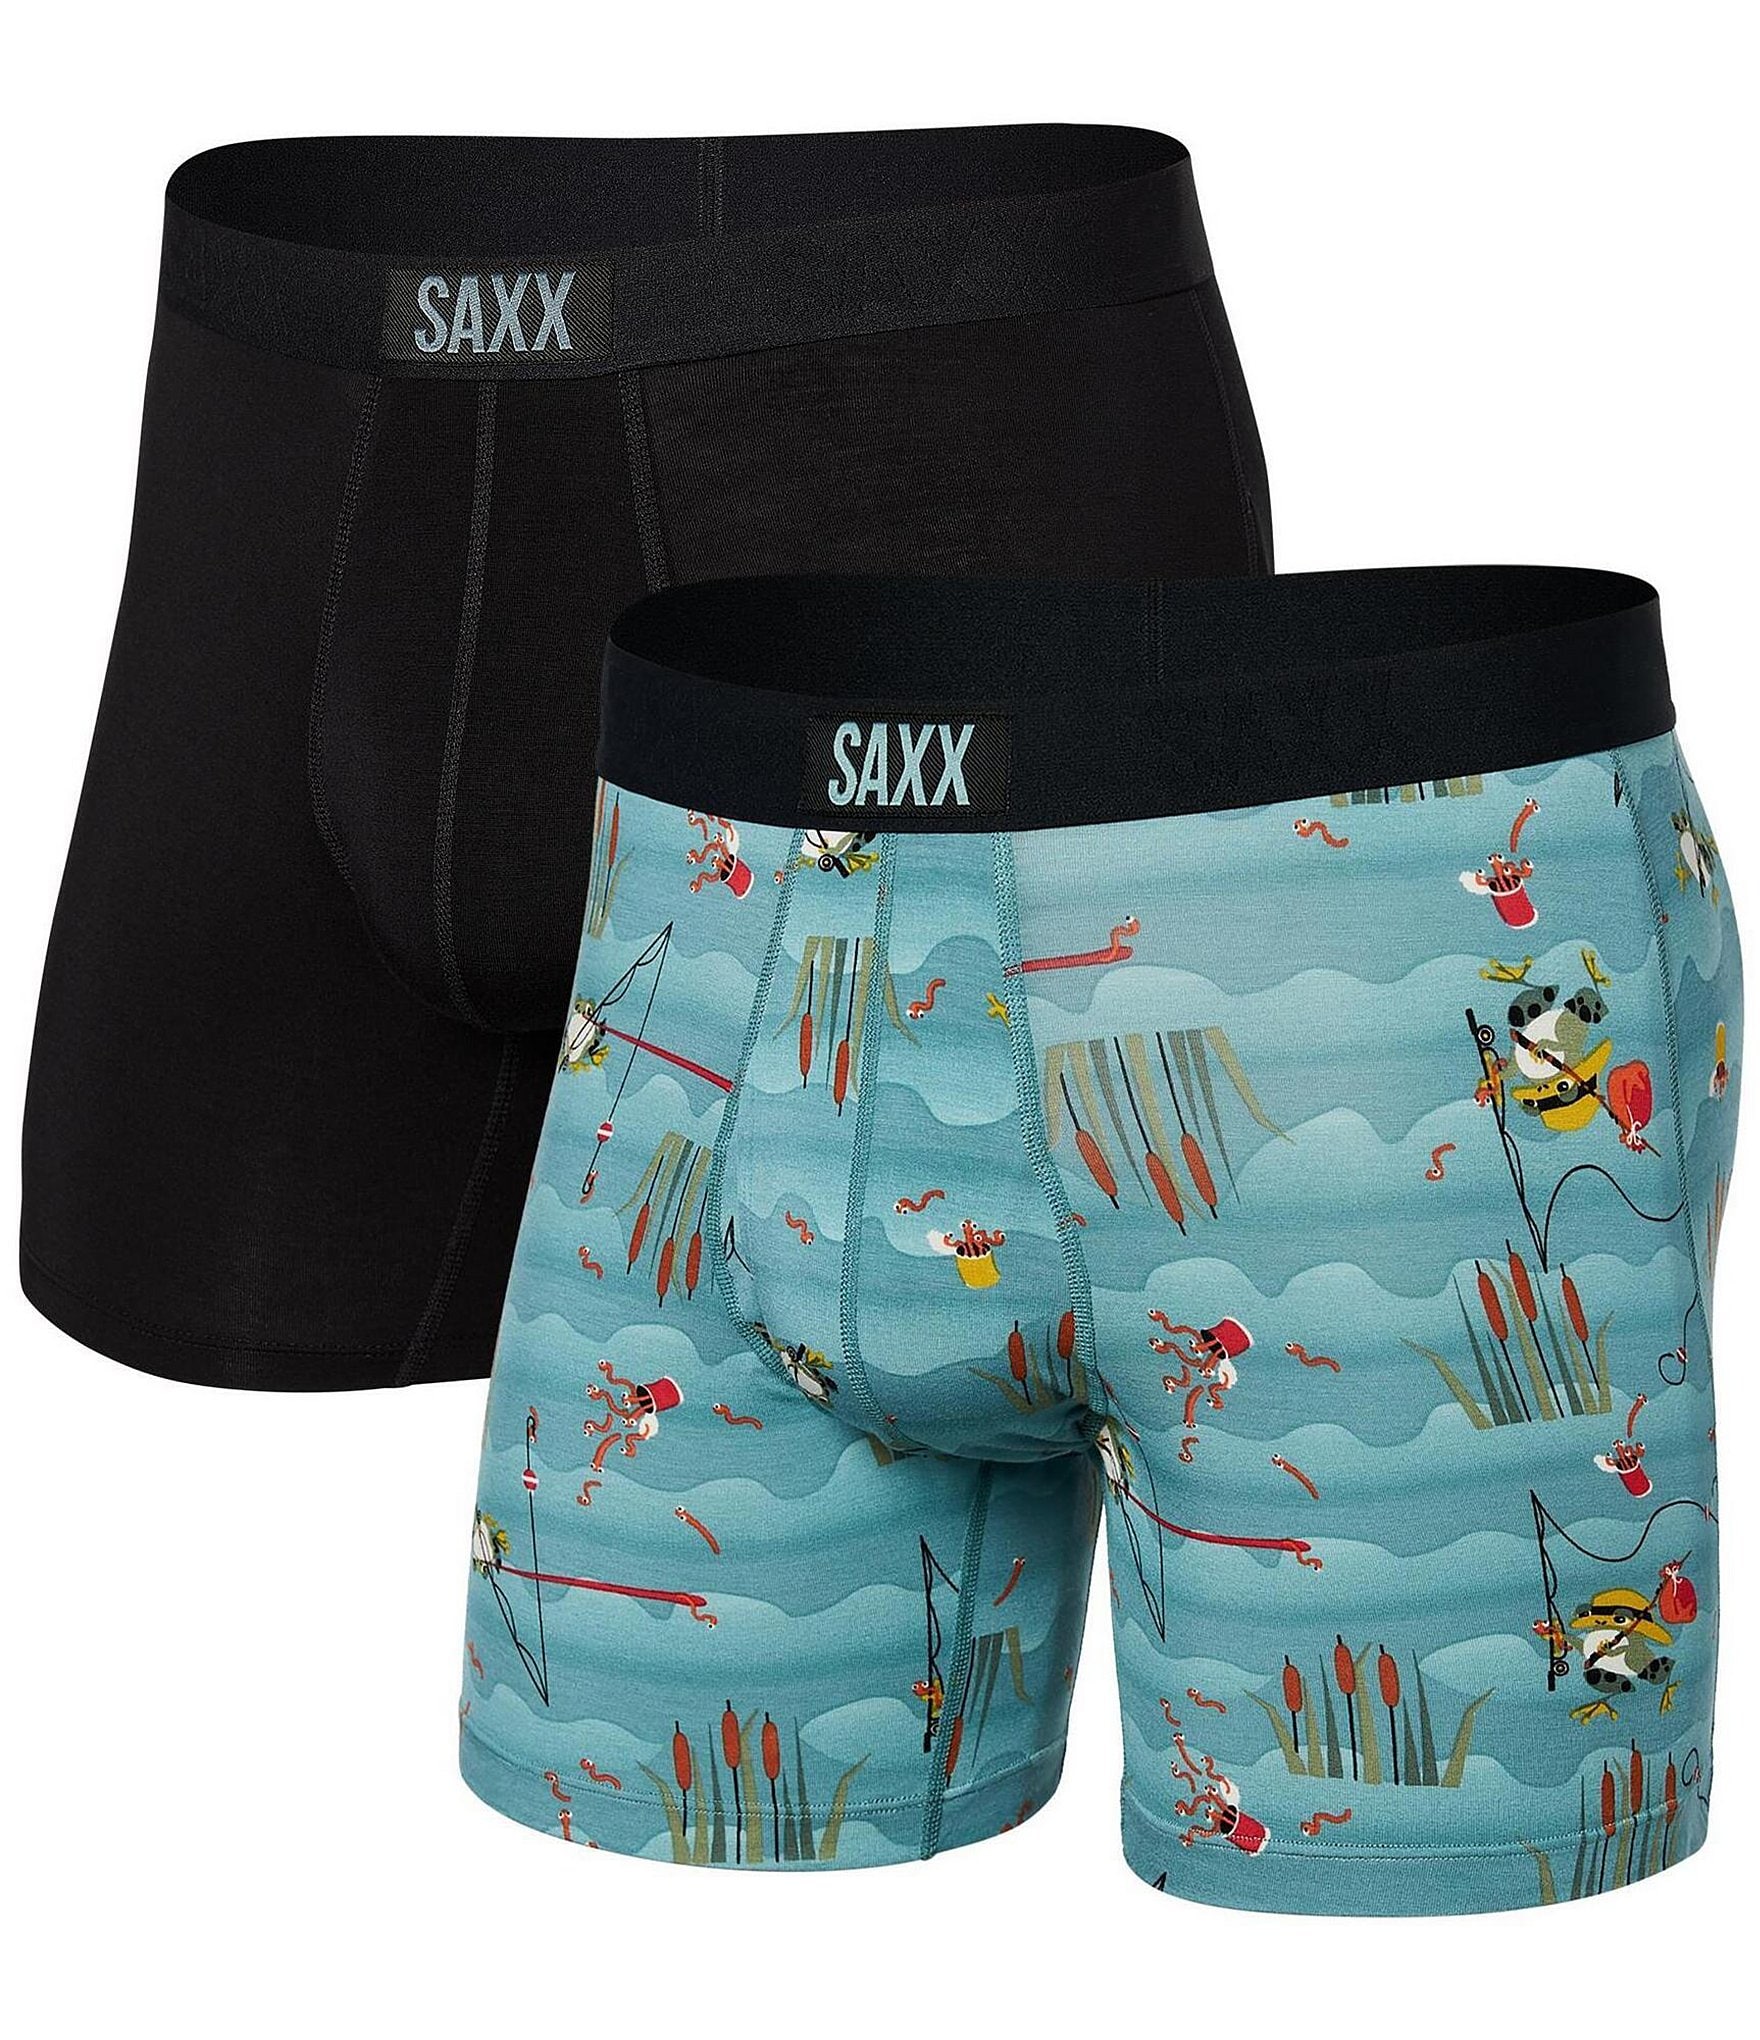 Saxx Underwear - Boxers - AliExpress